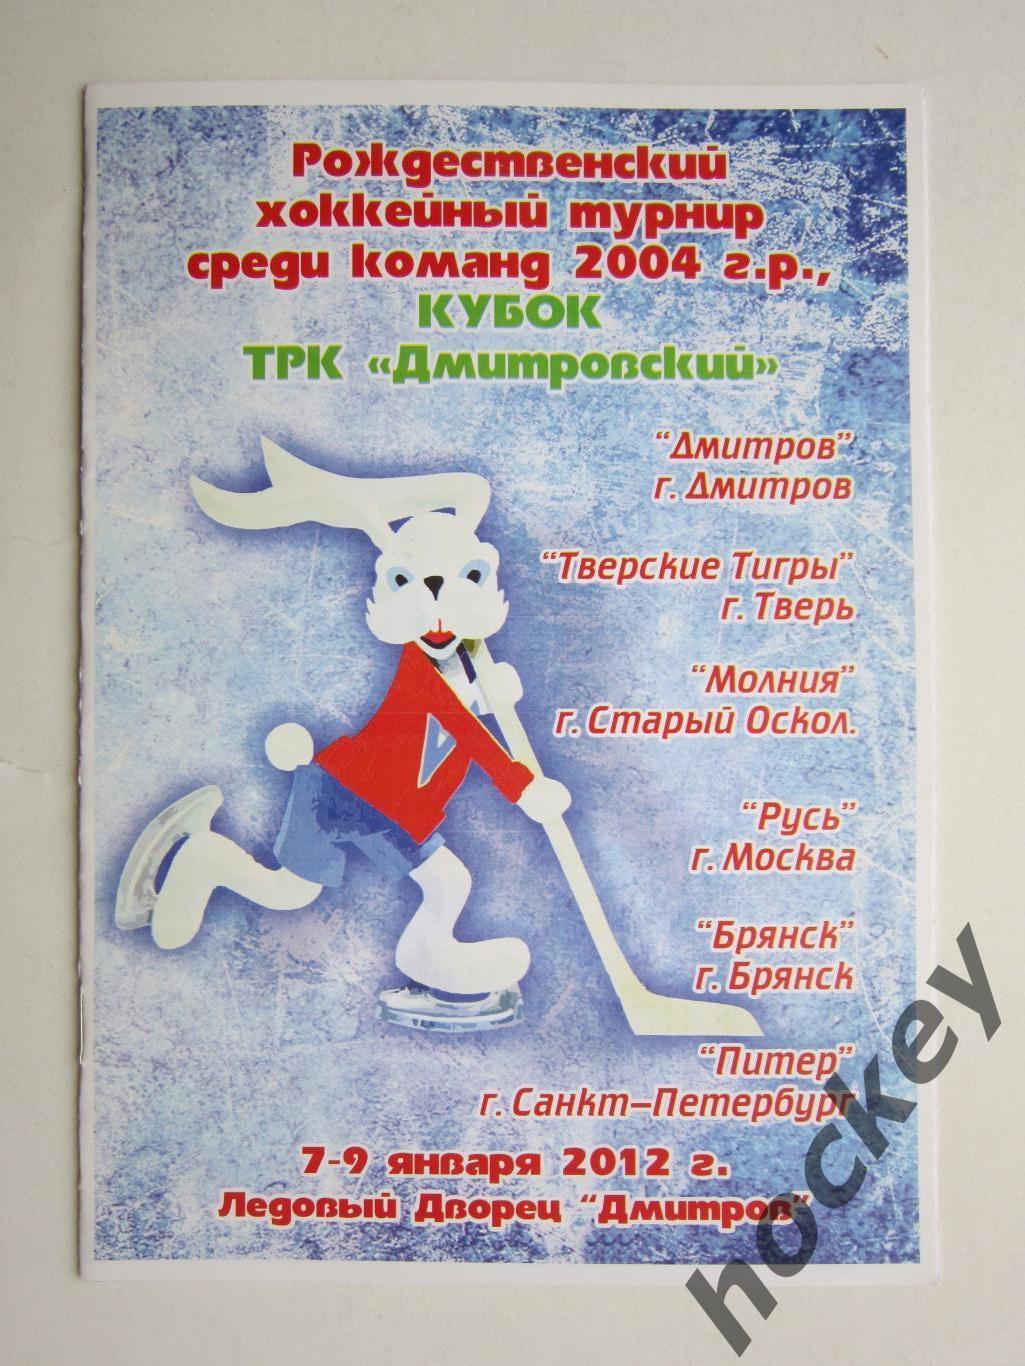 Рождественский турнир (команды 2004 г.р.) Дмитров 7-9.01.2012